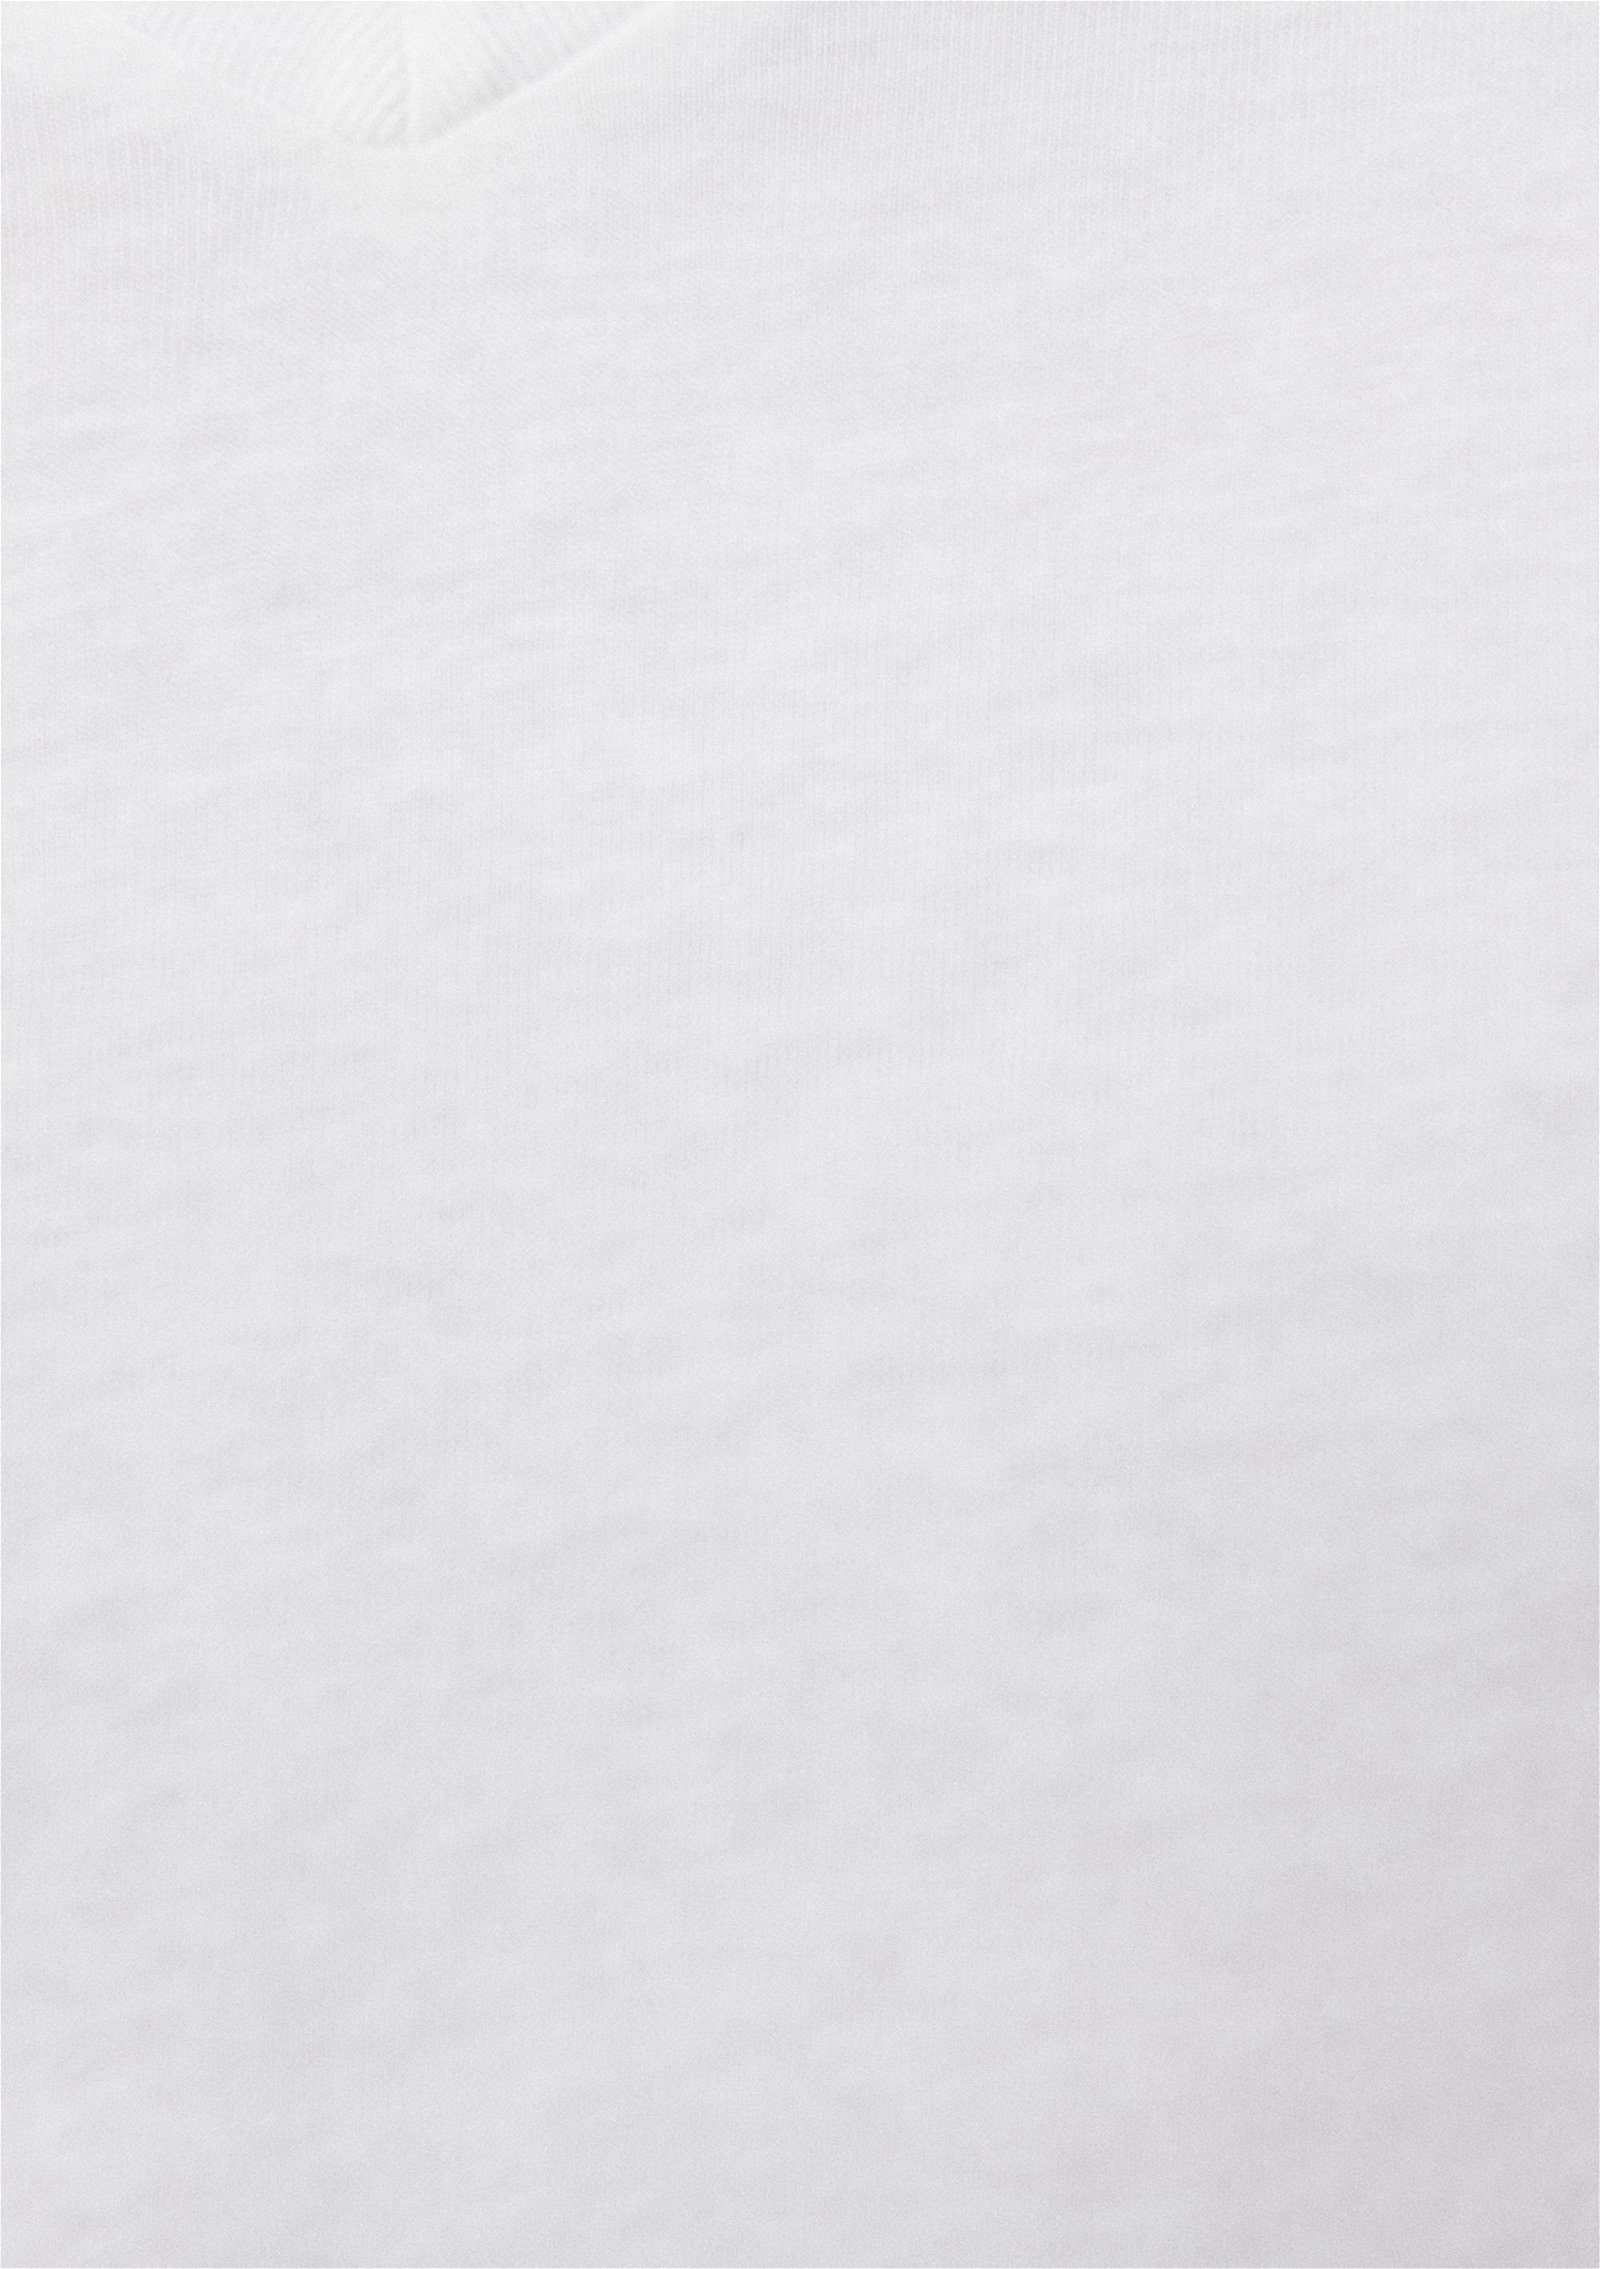 Mavi V Yaka Beyaz Basic Tişört Slim Fit / Dar Kesim 065586-620